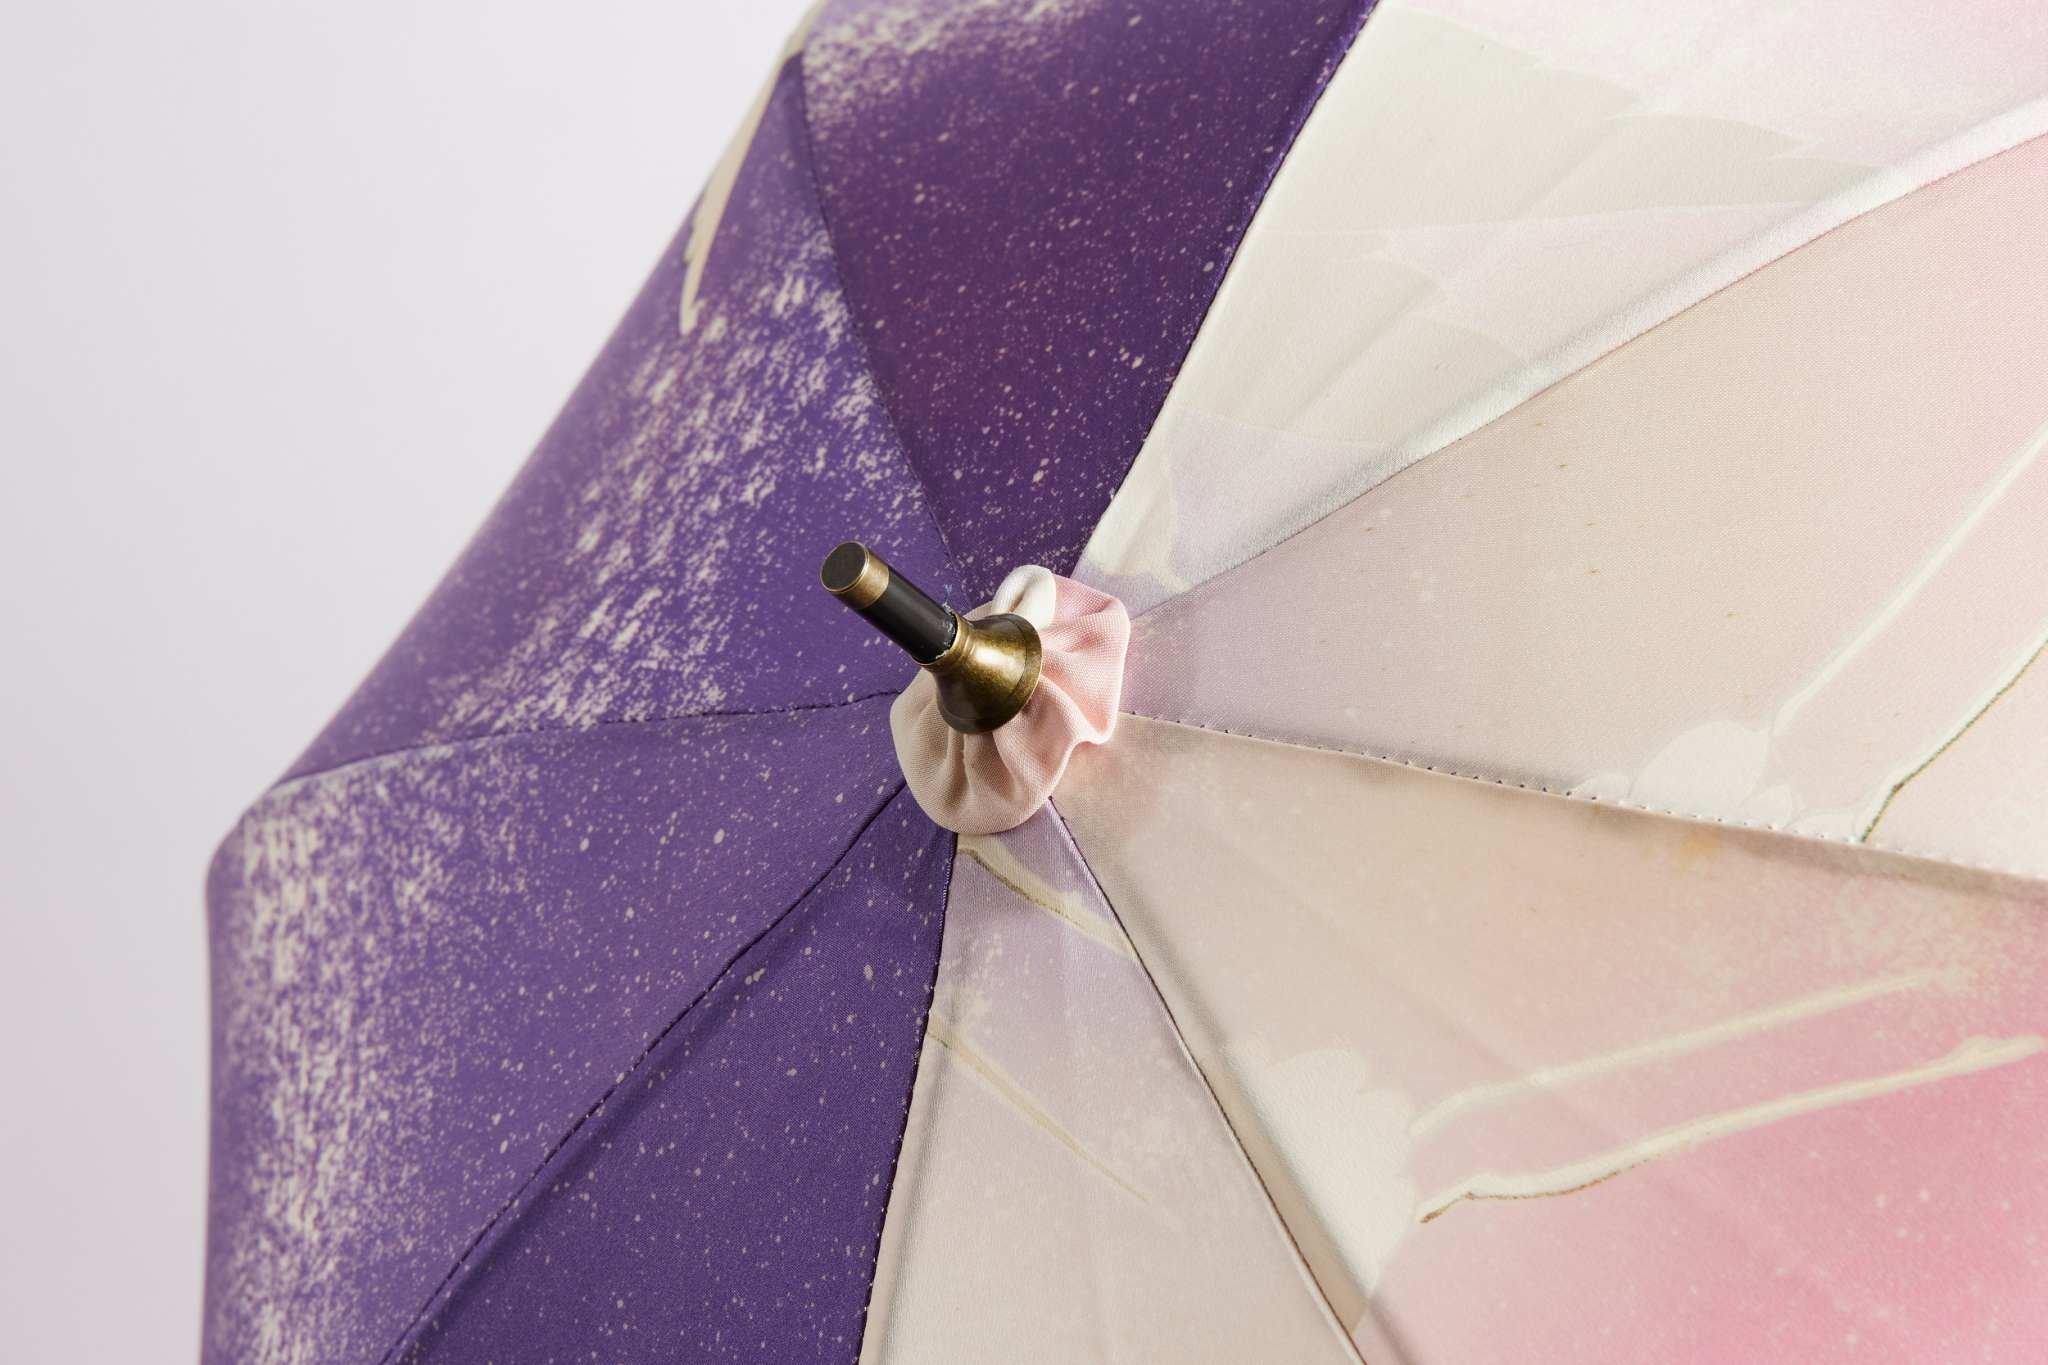 Kimono Umbrella - Maitsuru Design - pink and purple canopy